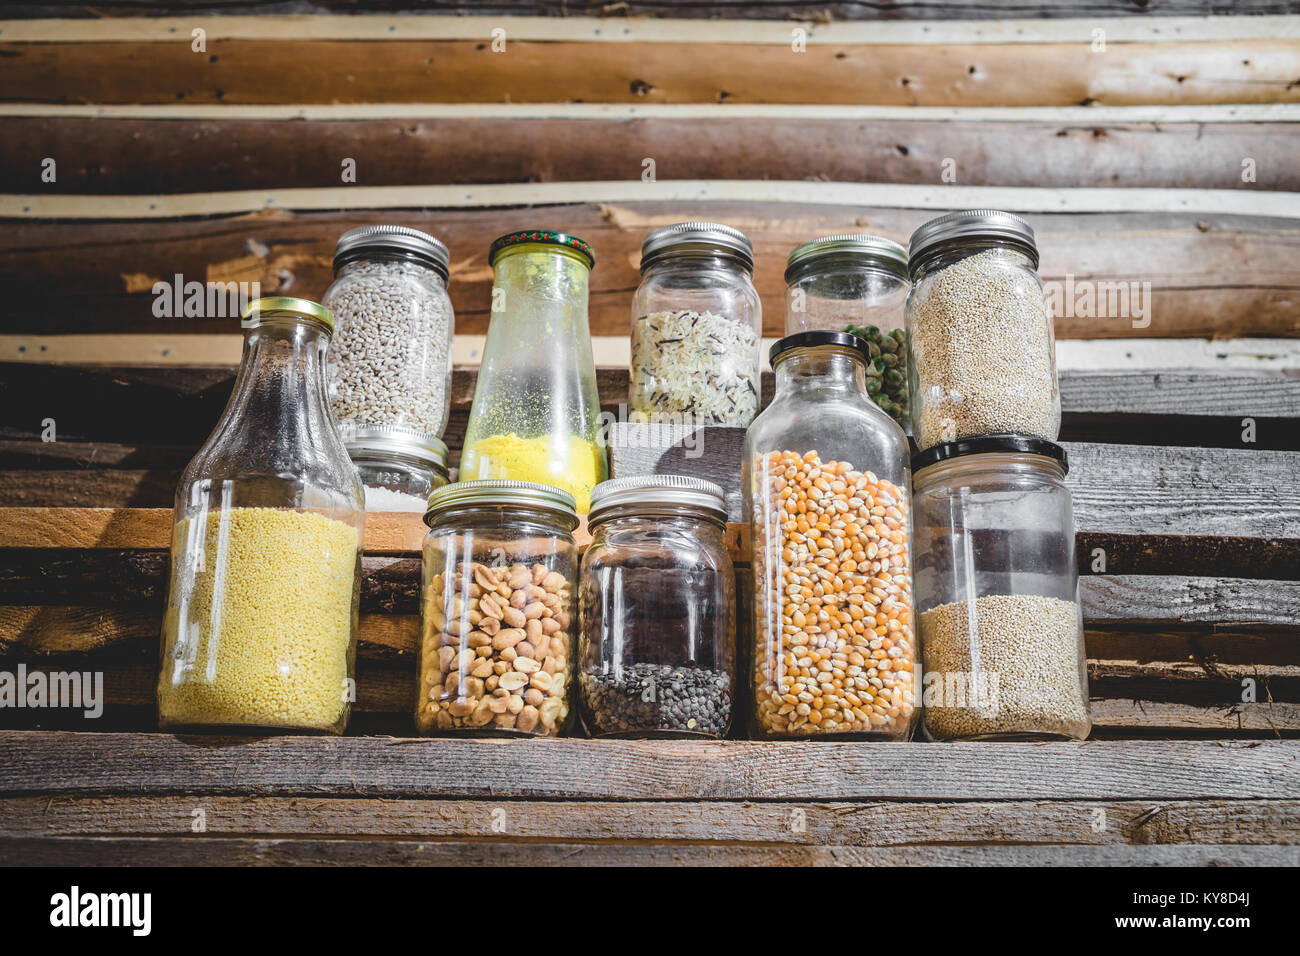 Peu de graines, de grains et de céréales dans des bocaux en verre avec fond de bois Banque D'Images